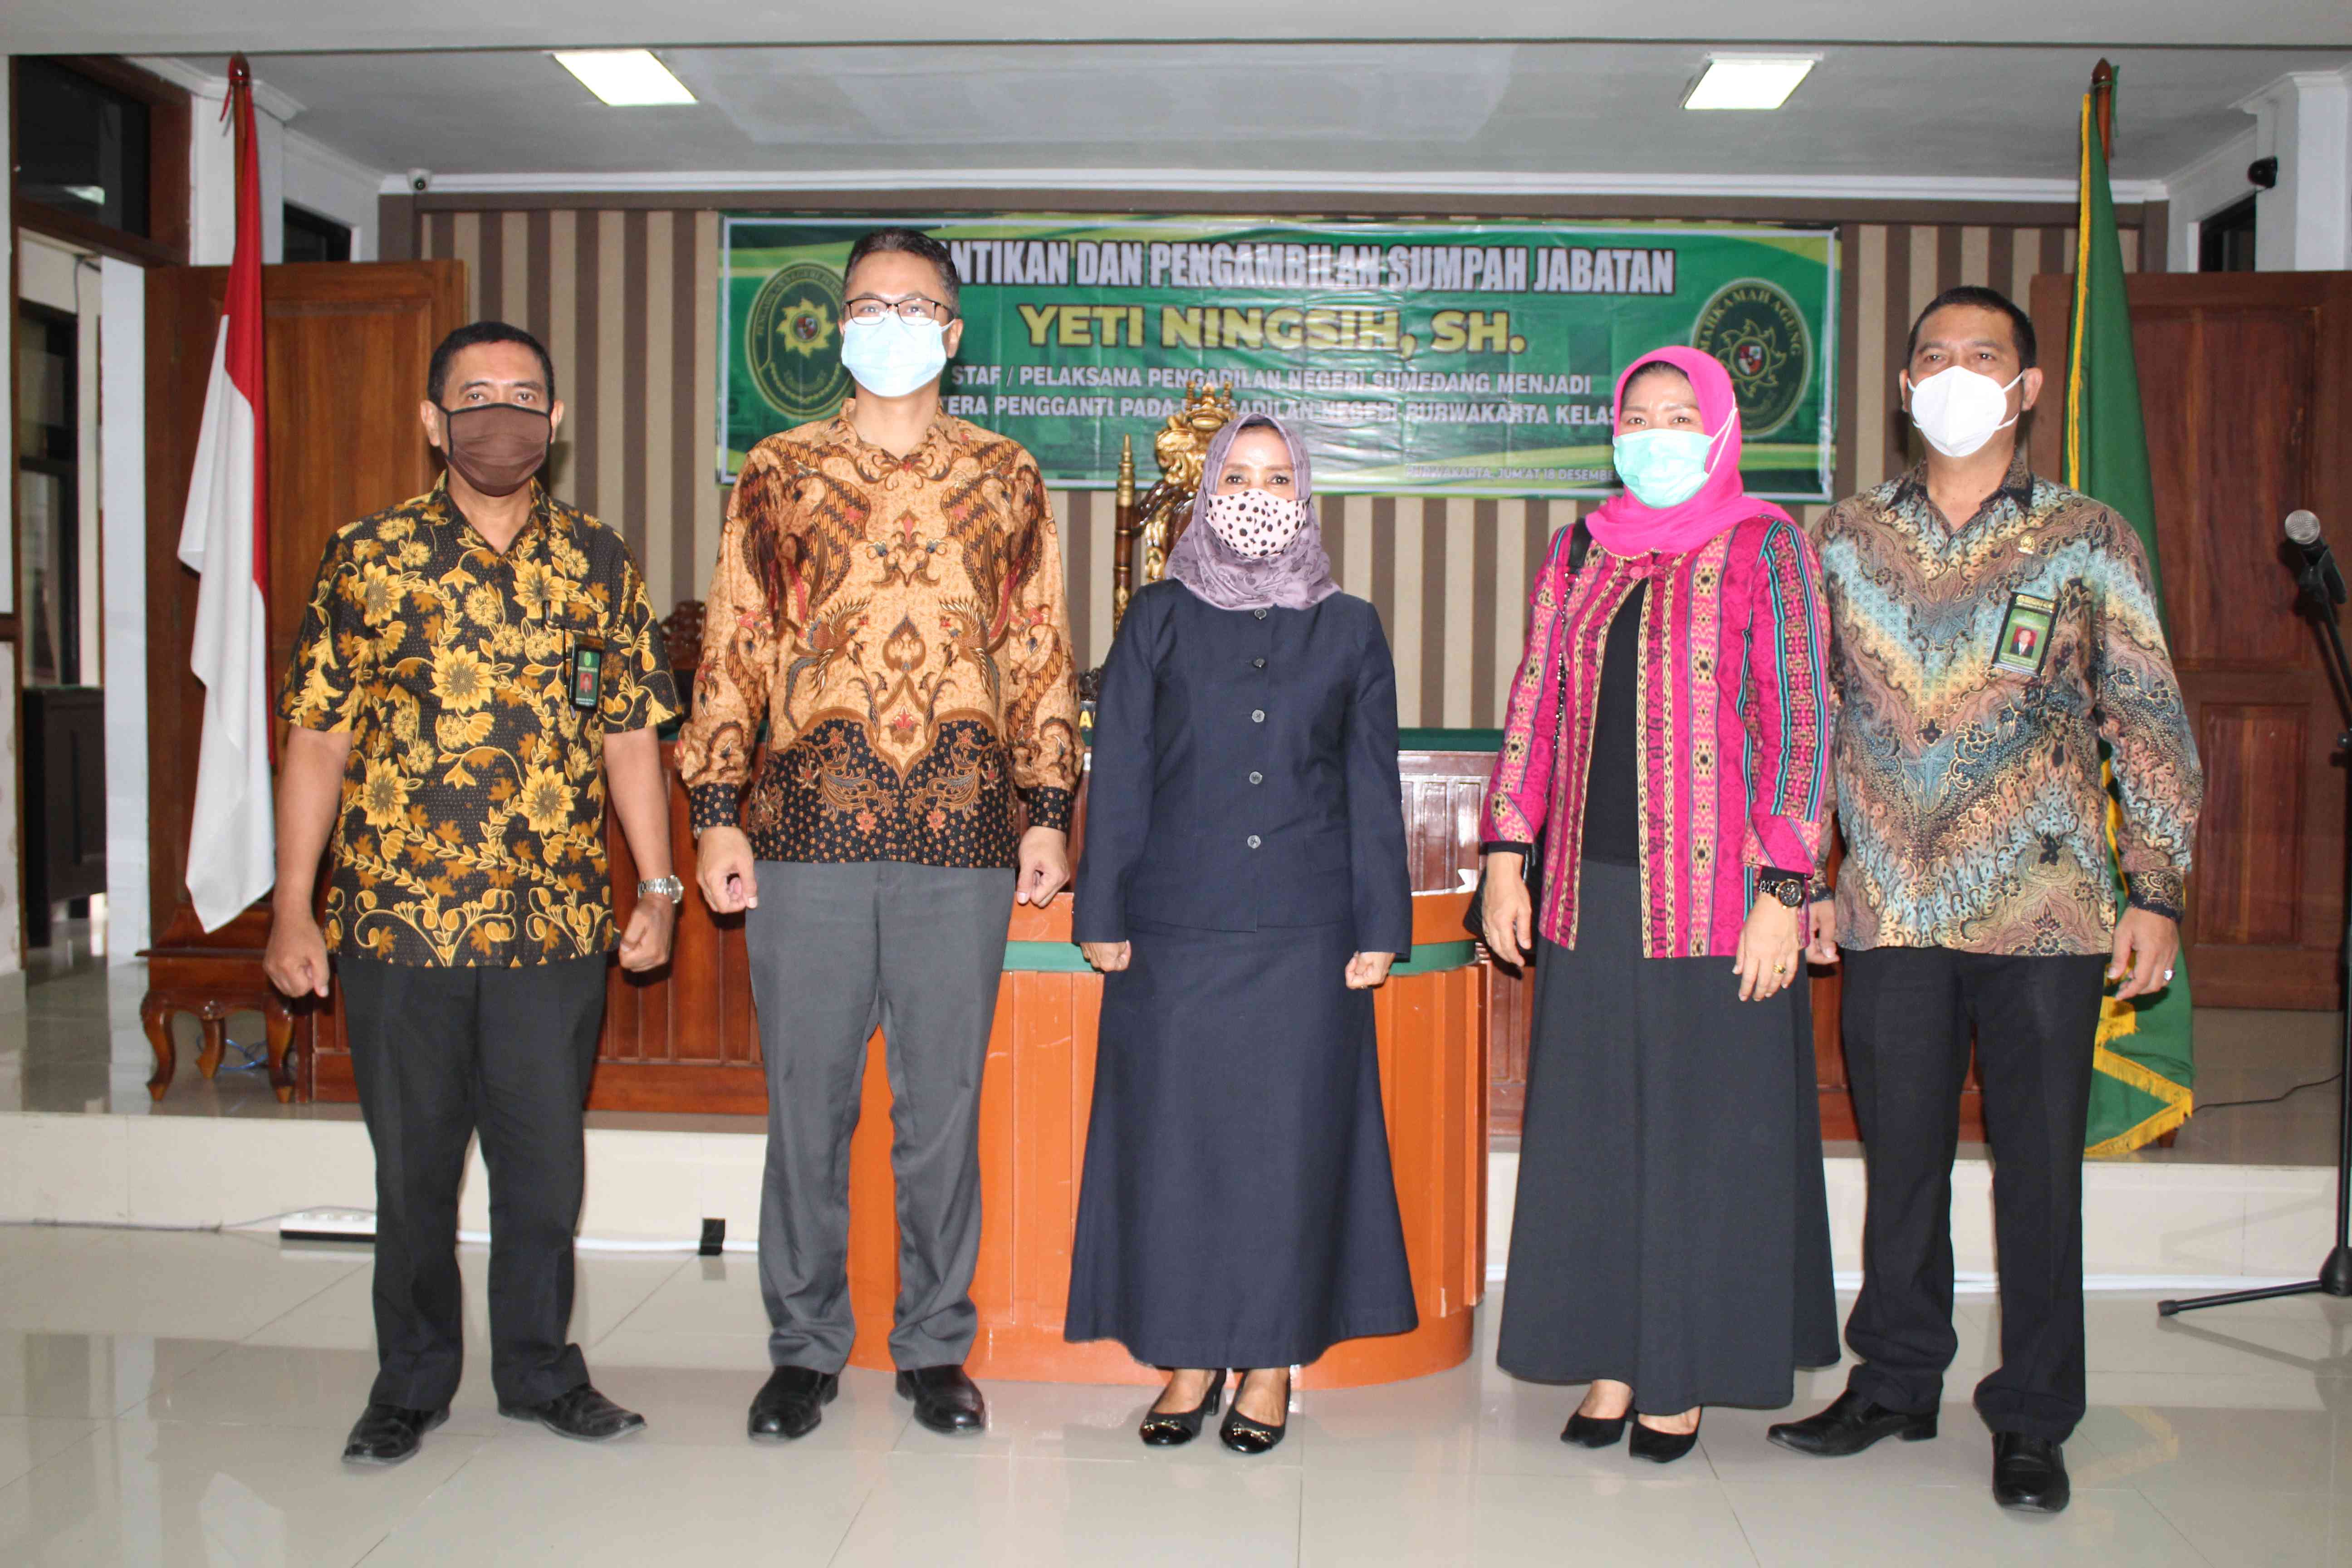 Foto bersama Pimpinan Pengadilan Negeri Purwakarta dan Pengadilan Negeri Sumedang